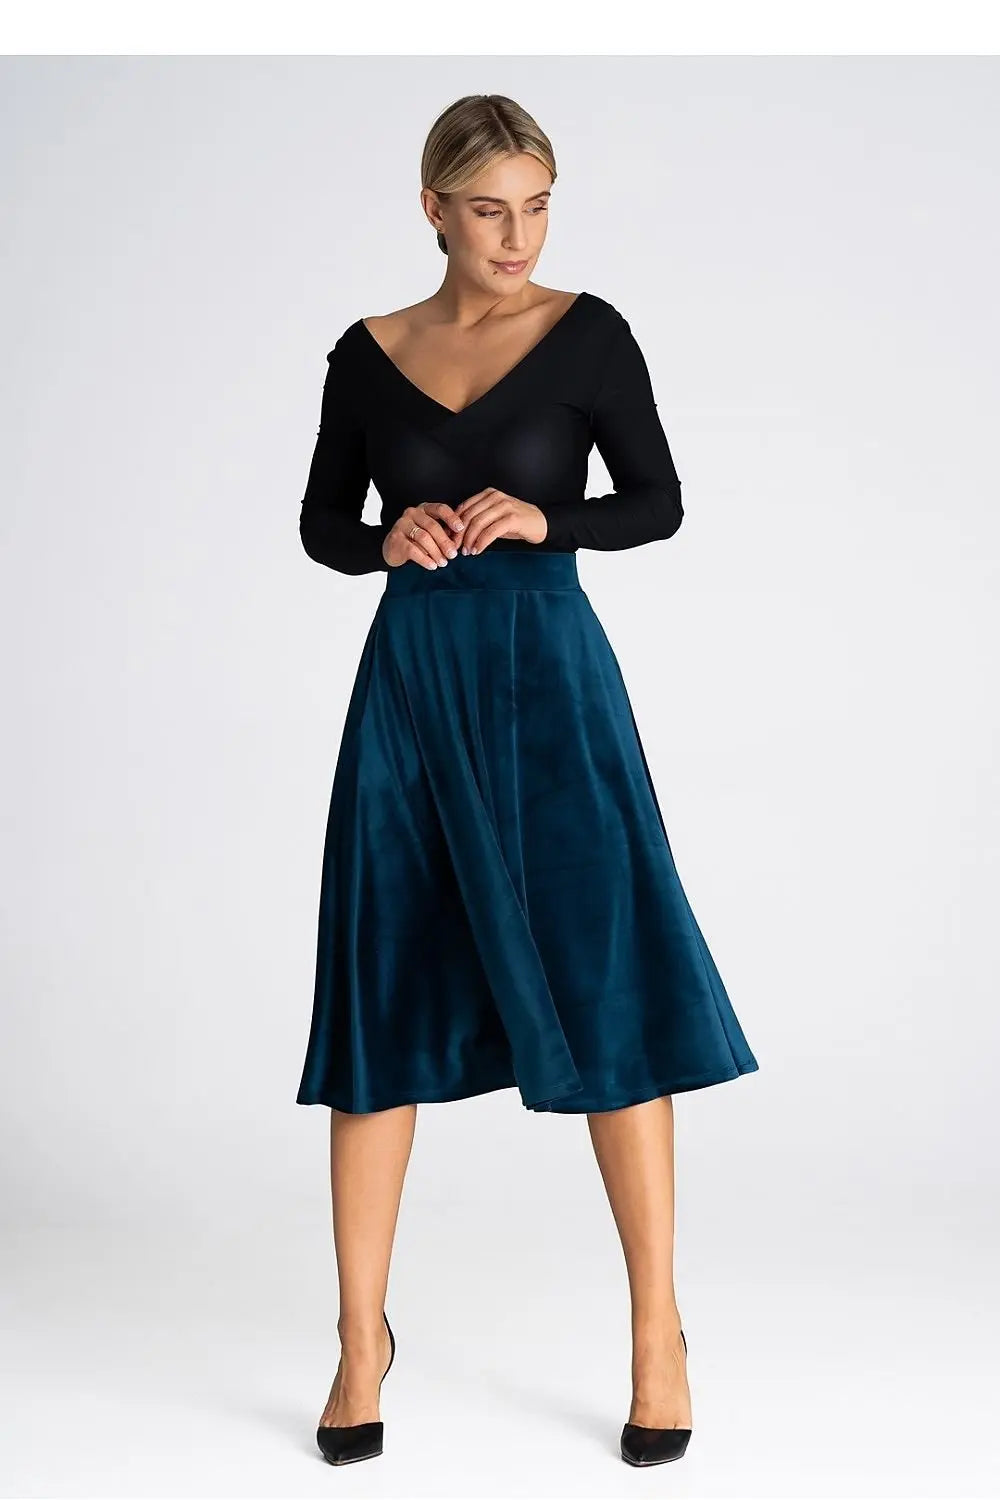 Elegant Trendy Style Midi-Skirt - Venus Trendy Fashion Online